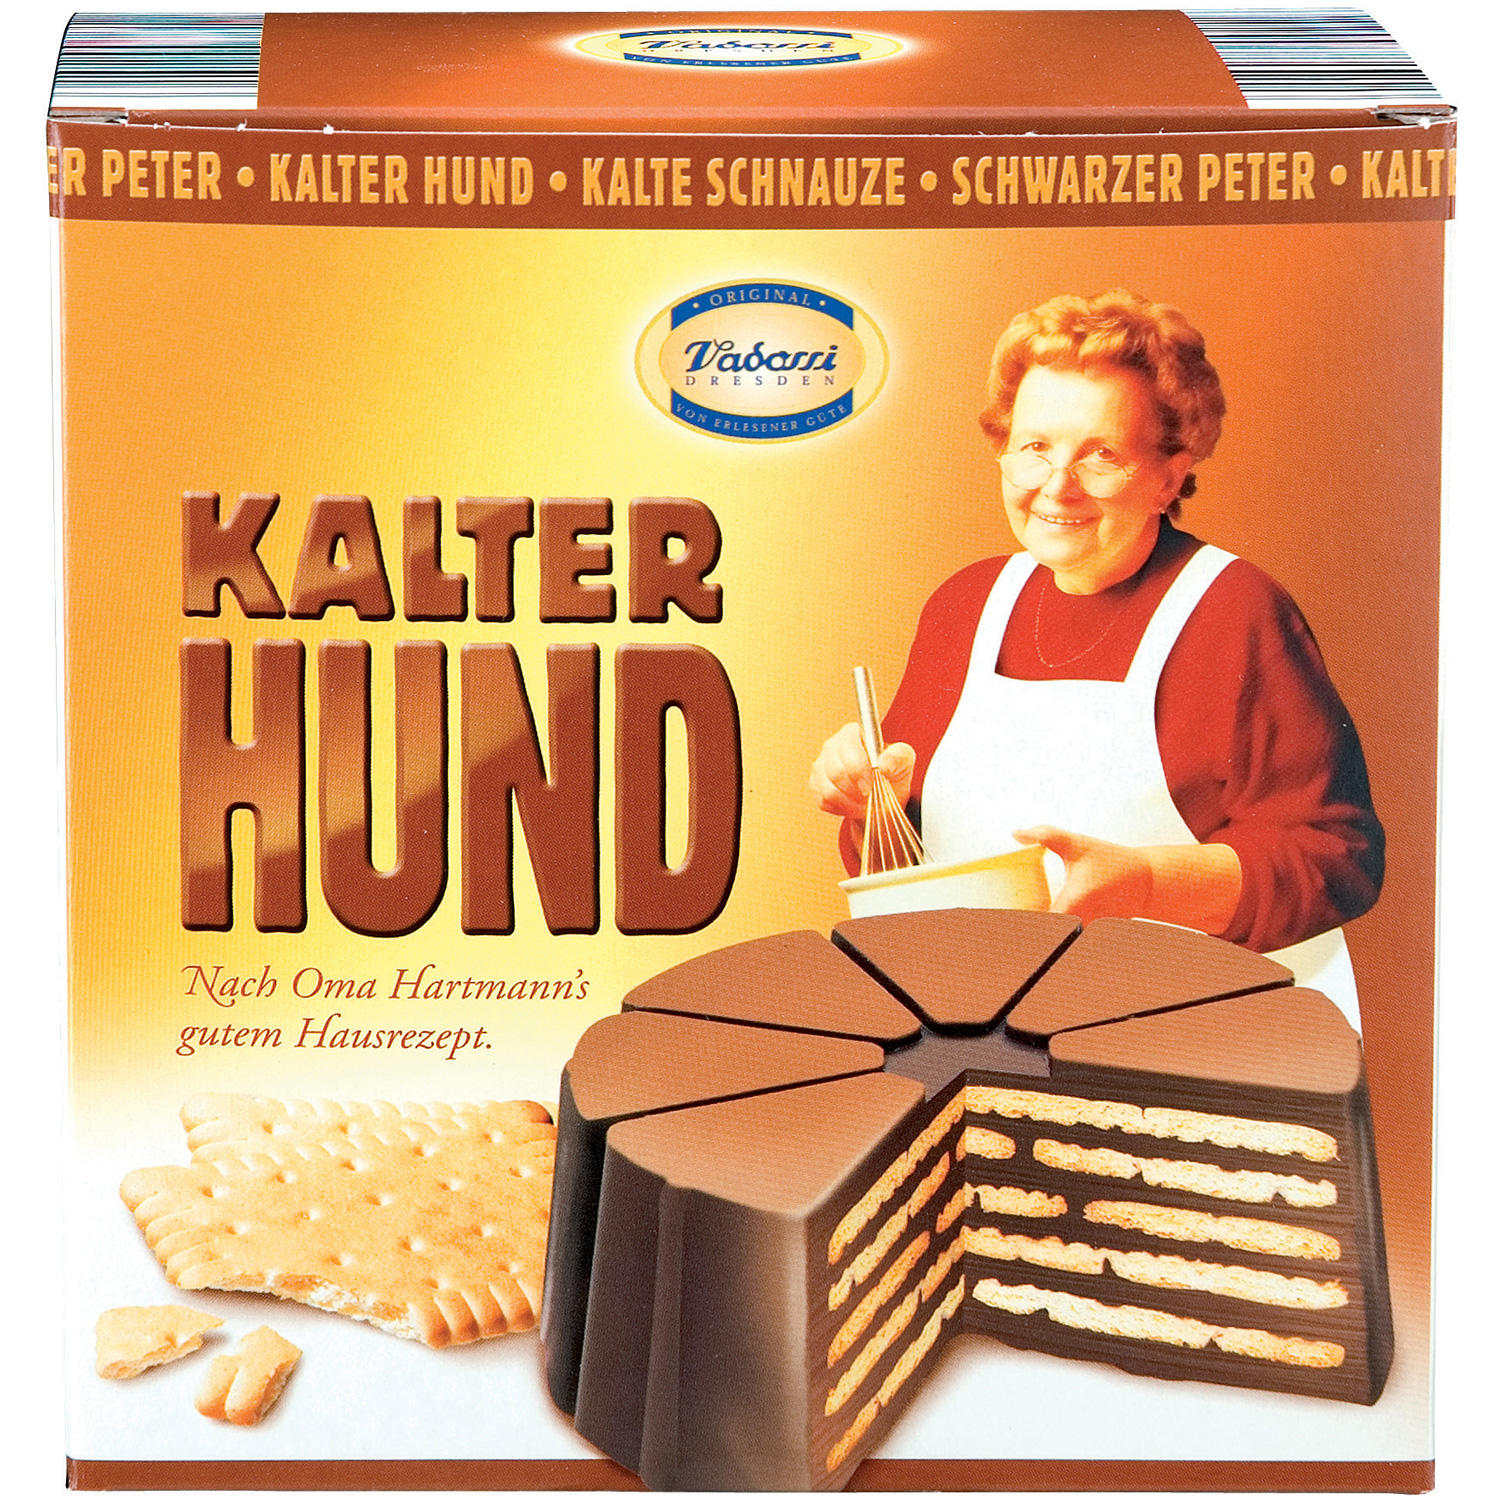 Oma Hartmanns Kalter Hund Kekstorte 500g | Online kaufen im World of ...